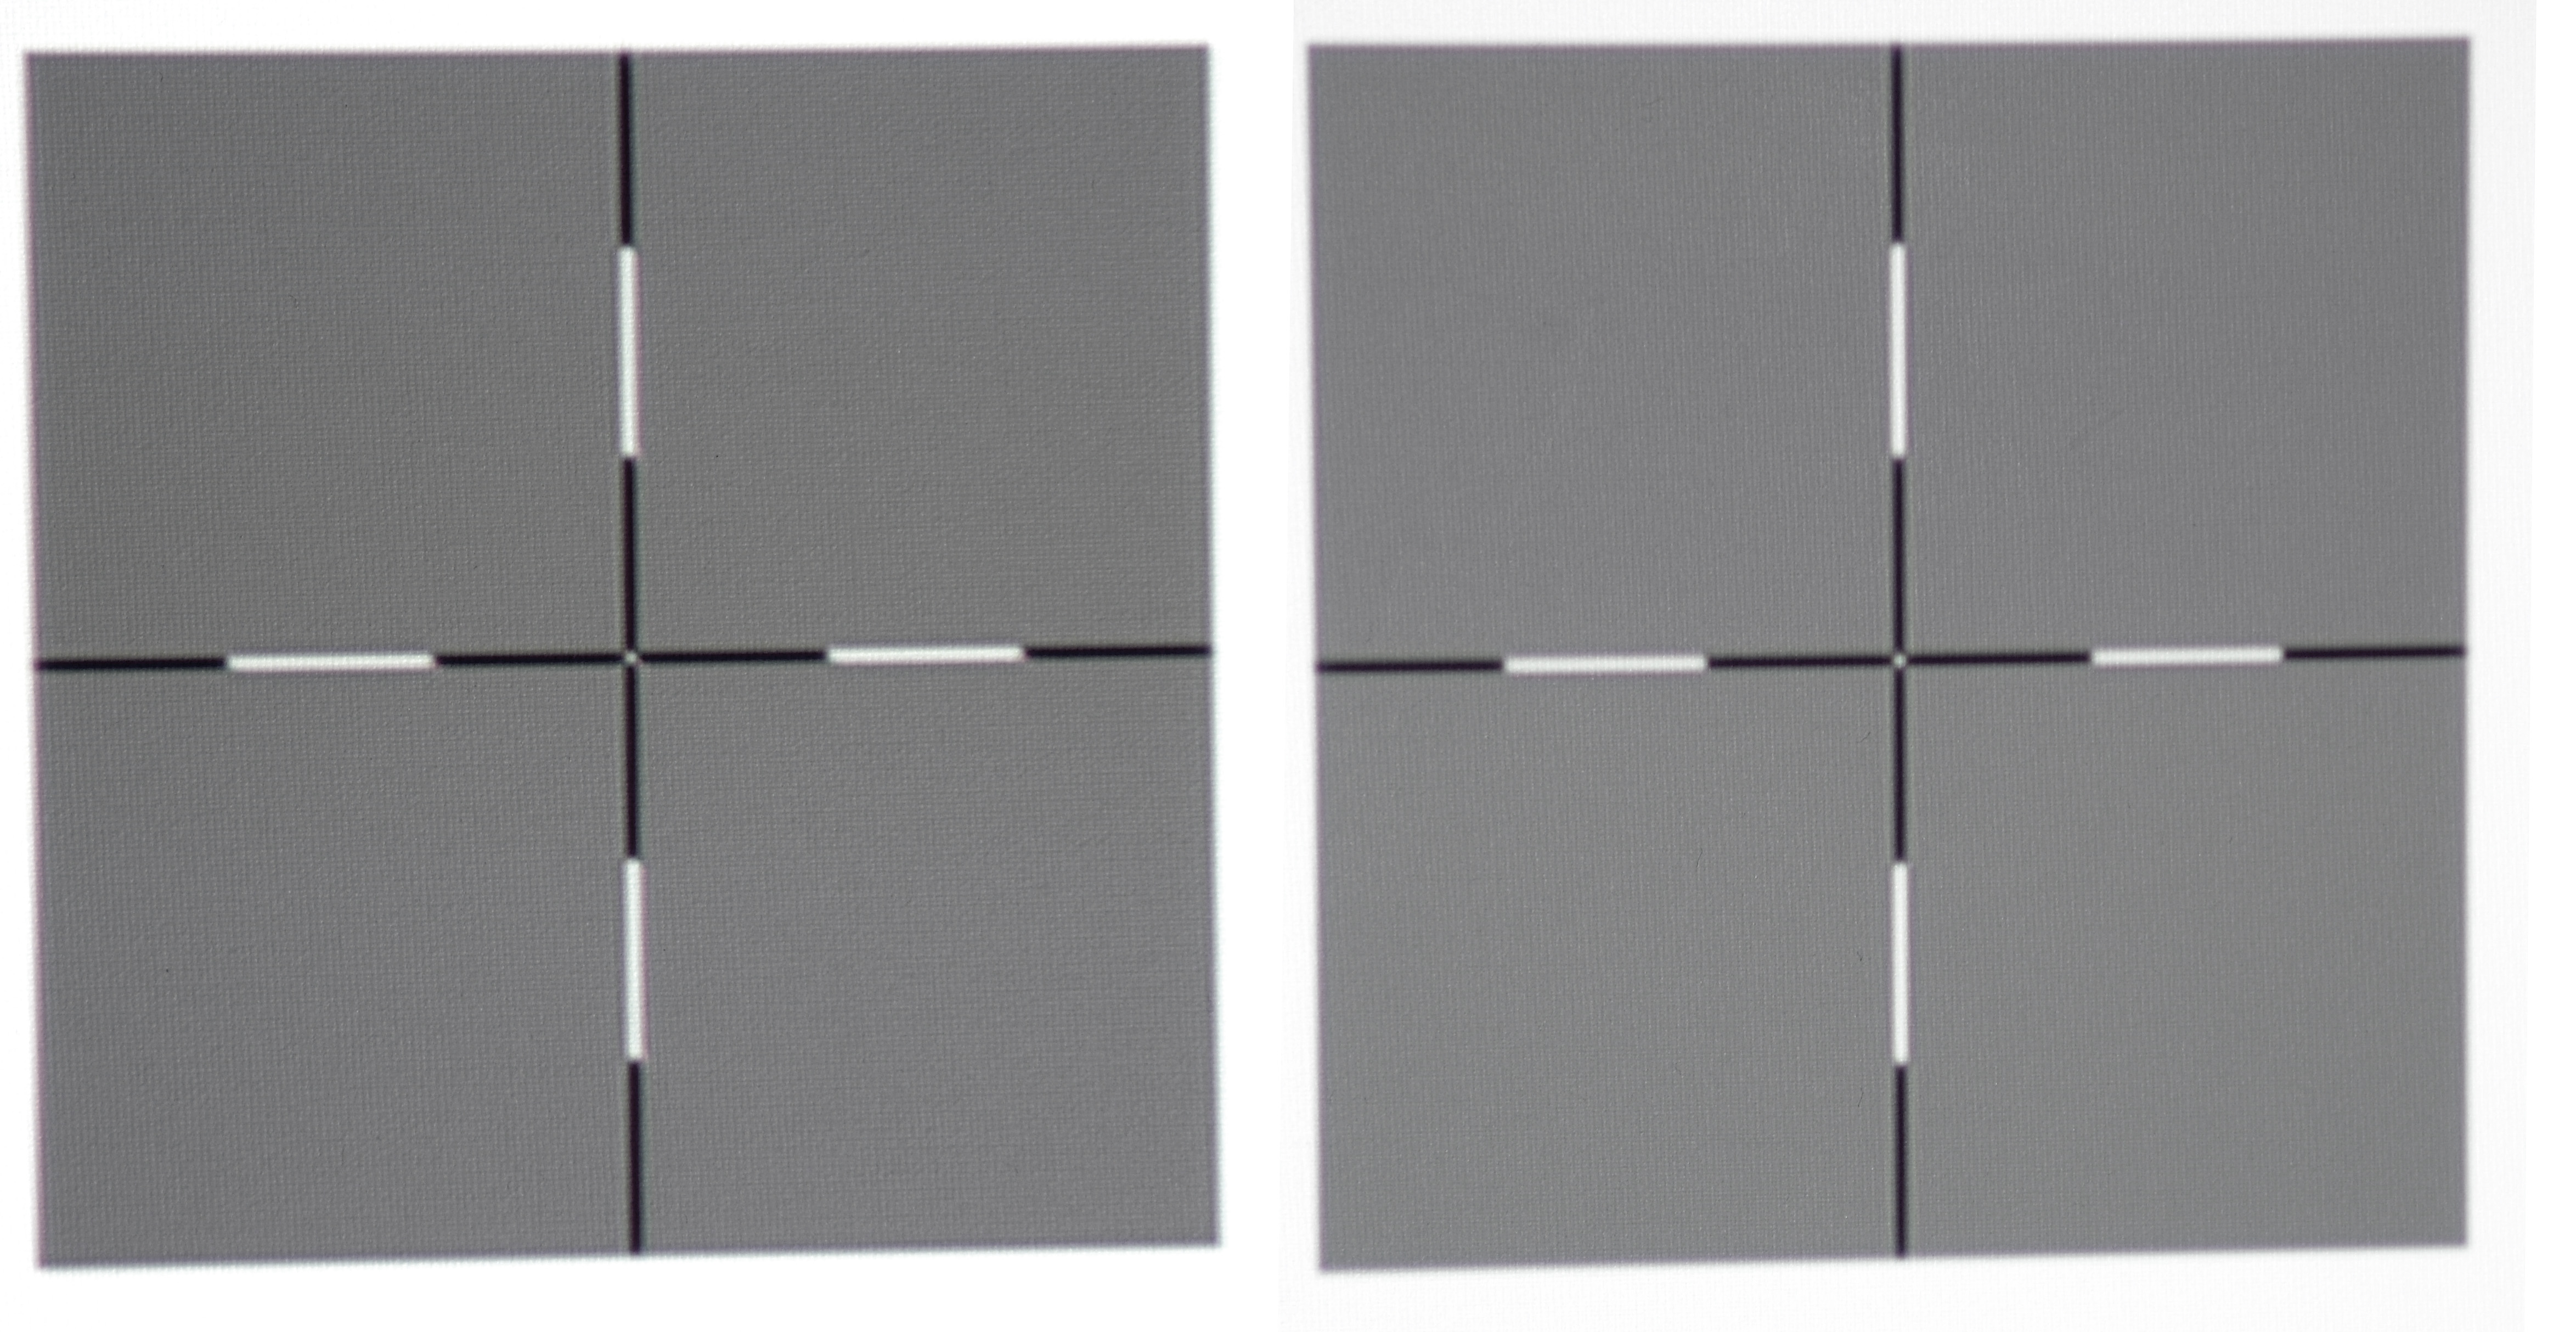 Ausleuchtung: Wie gleichmäßig der BenQ W1700 sein Licht auf die Leinwand wirft, offenbart mein Uniformity-Testbild. Das Kreuz in Pixelauflösung am linken Bildrand (Kreuz links) unterscheidet sich kaum vom Kreuz, das auf dem Testbild in der Bildmitte (Kreuz rechts) dargestellt wird.